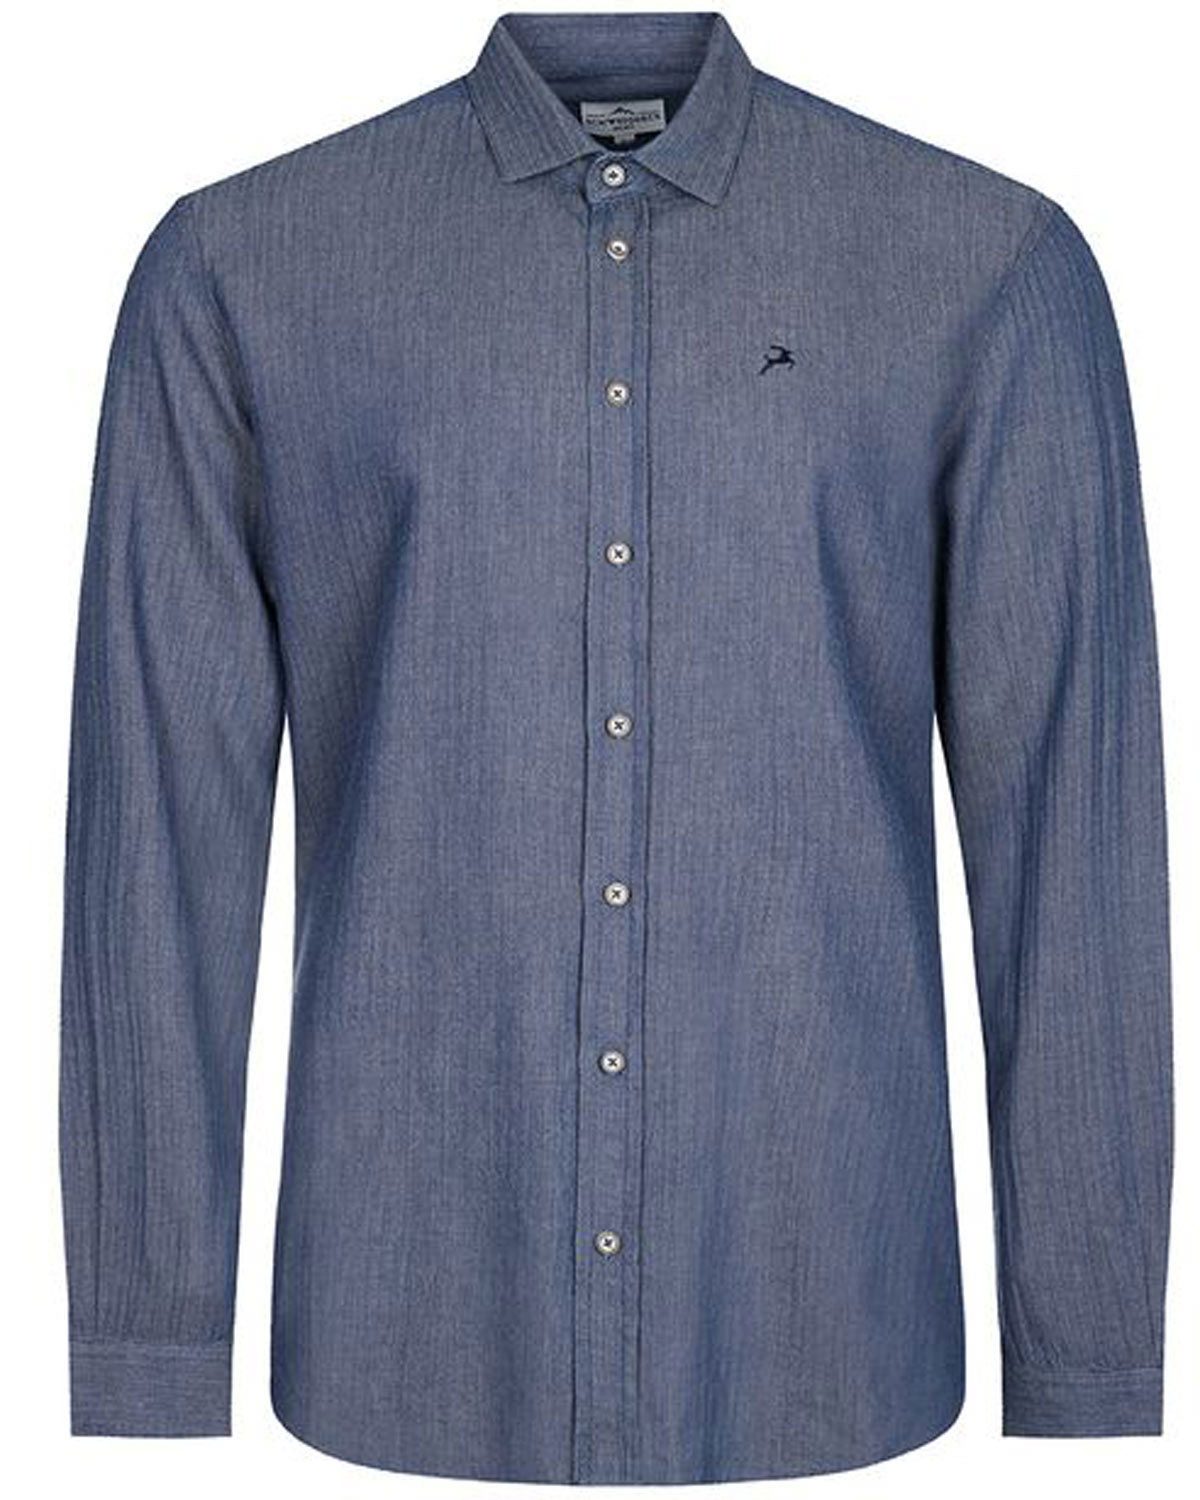 Maddox Trachtenhemd Trachtenhemd - Hemd-107, Blau